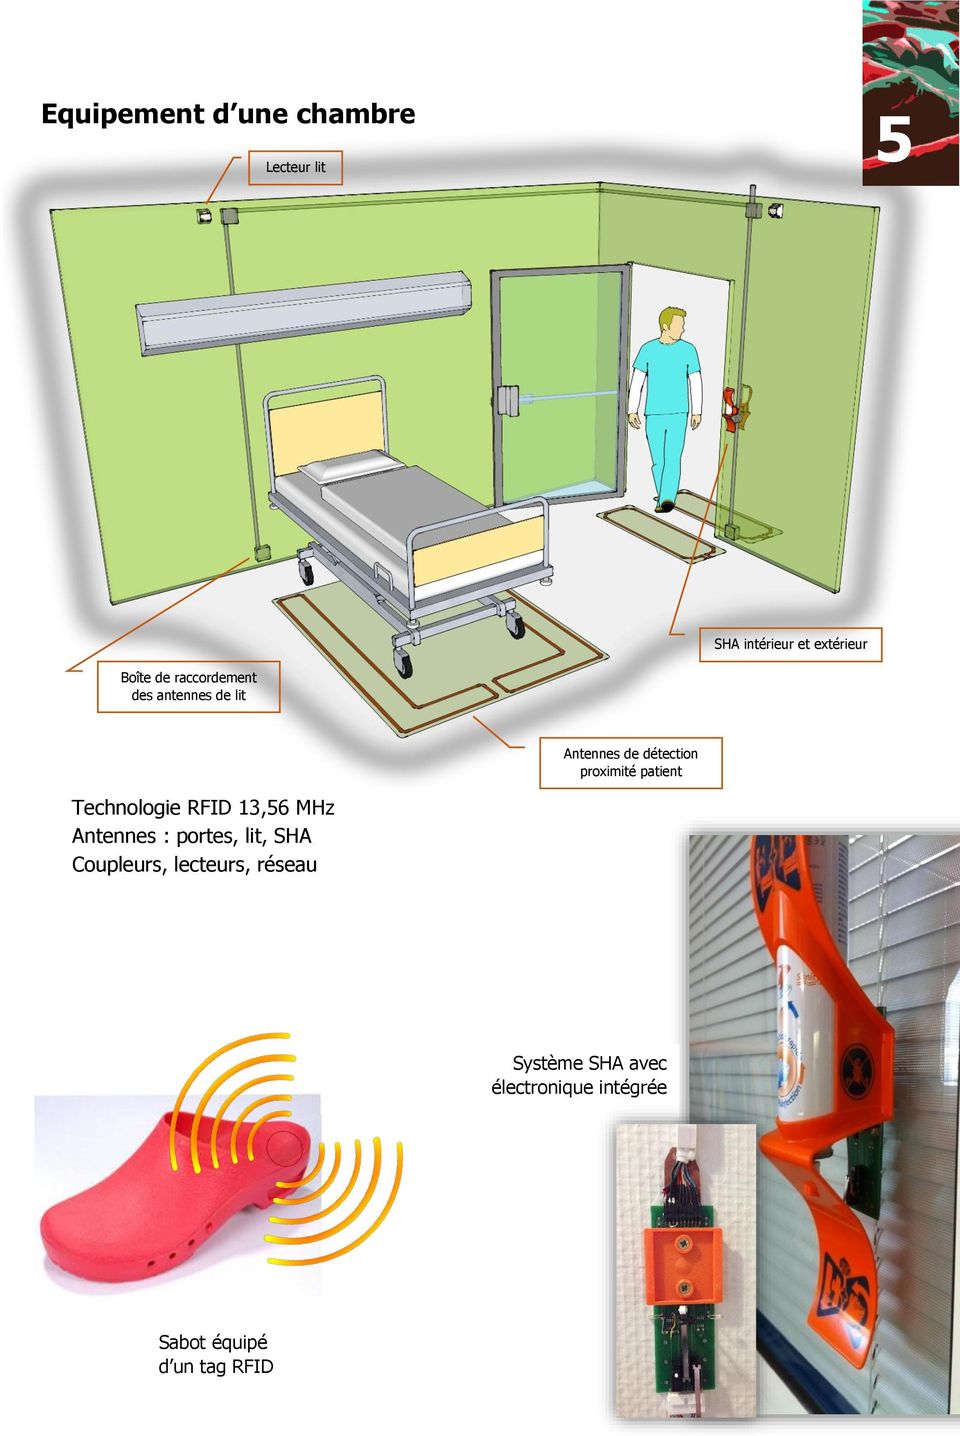 patient Technologie RFID 13,56 MHz Antennes : portes, lit, SHA Coupleurs,